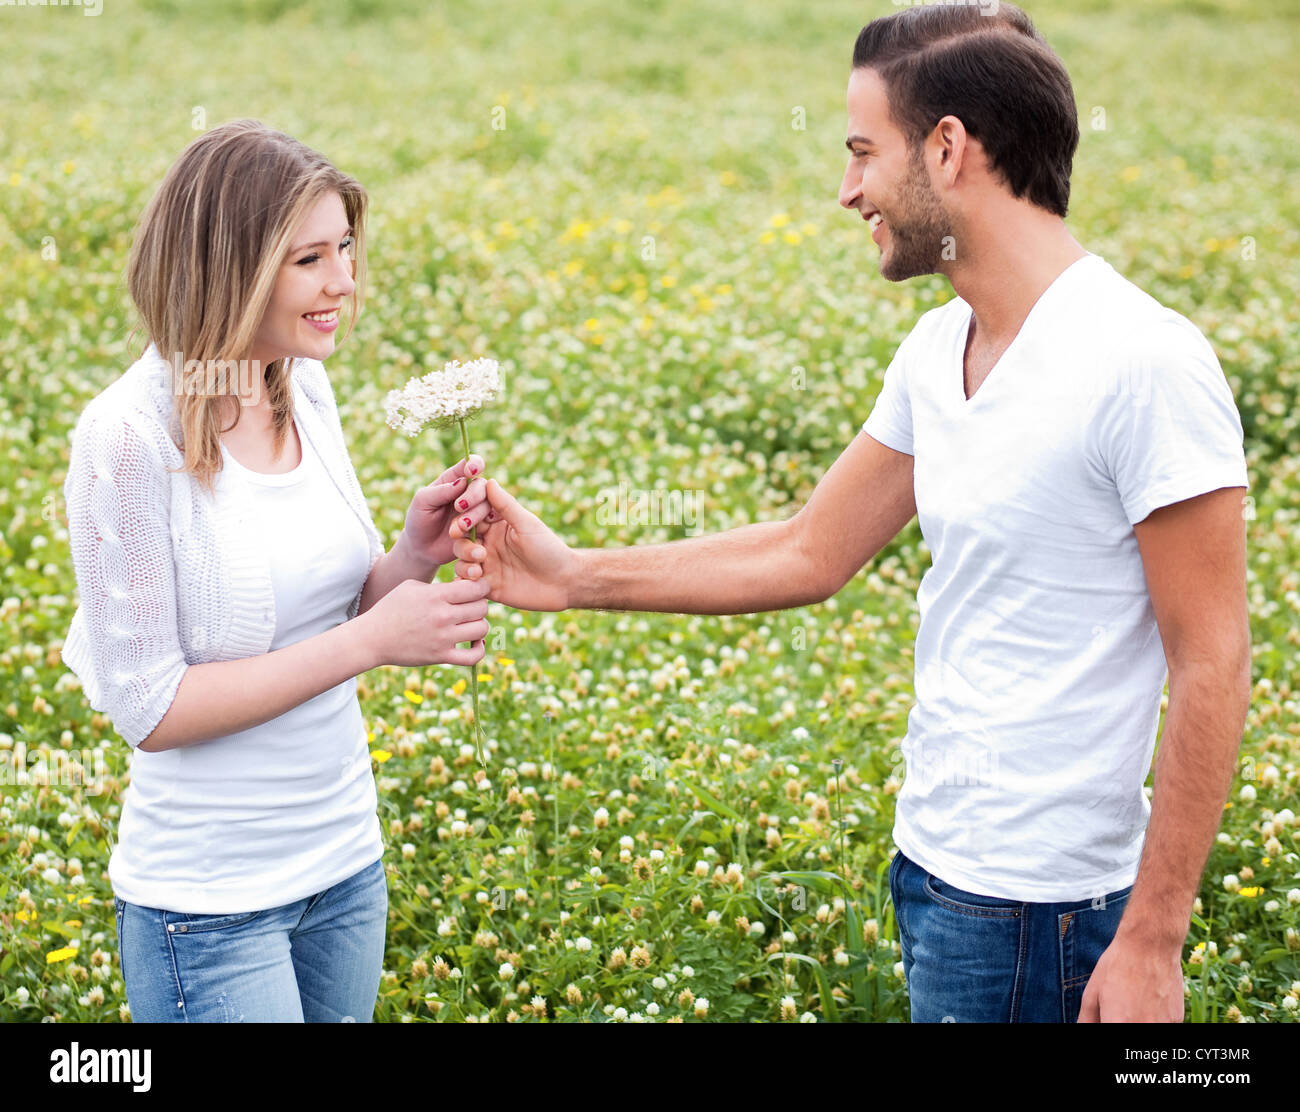 Бывший муж заботится. Девушке дарят цветы. Мужчина дарит цветы. Парень дарит букет. Парень дарит букет девушке.